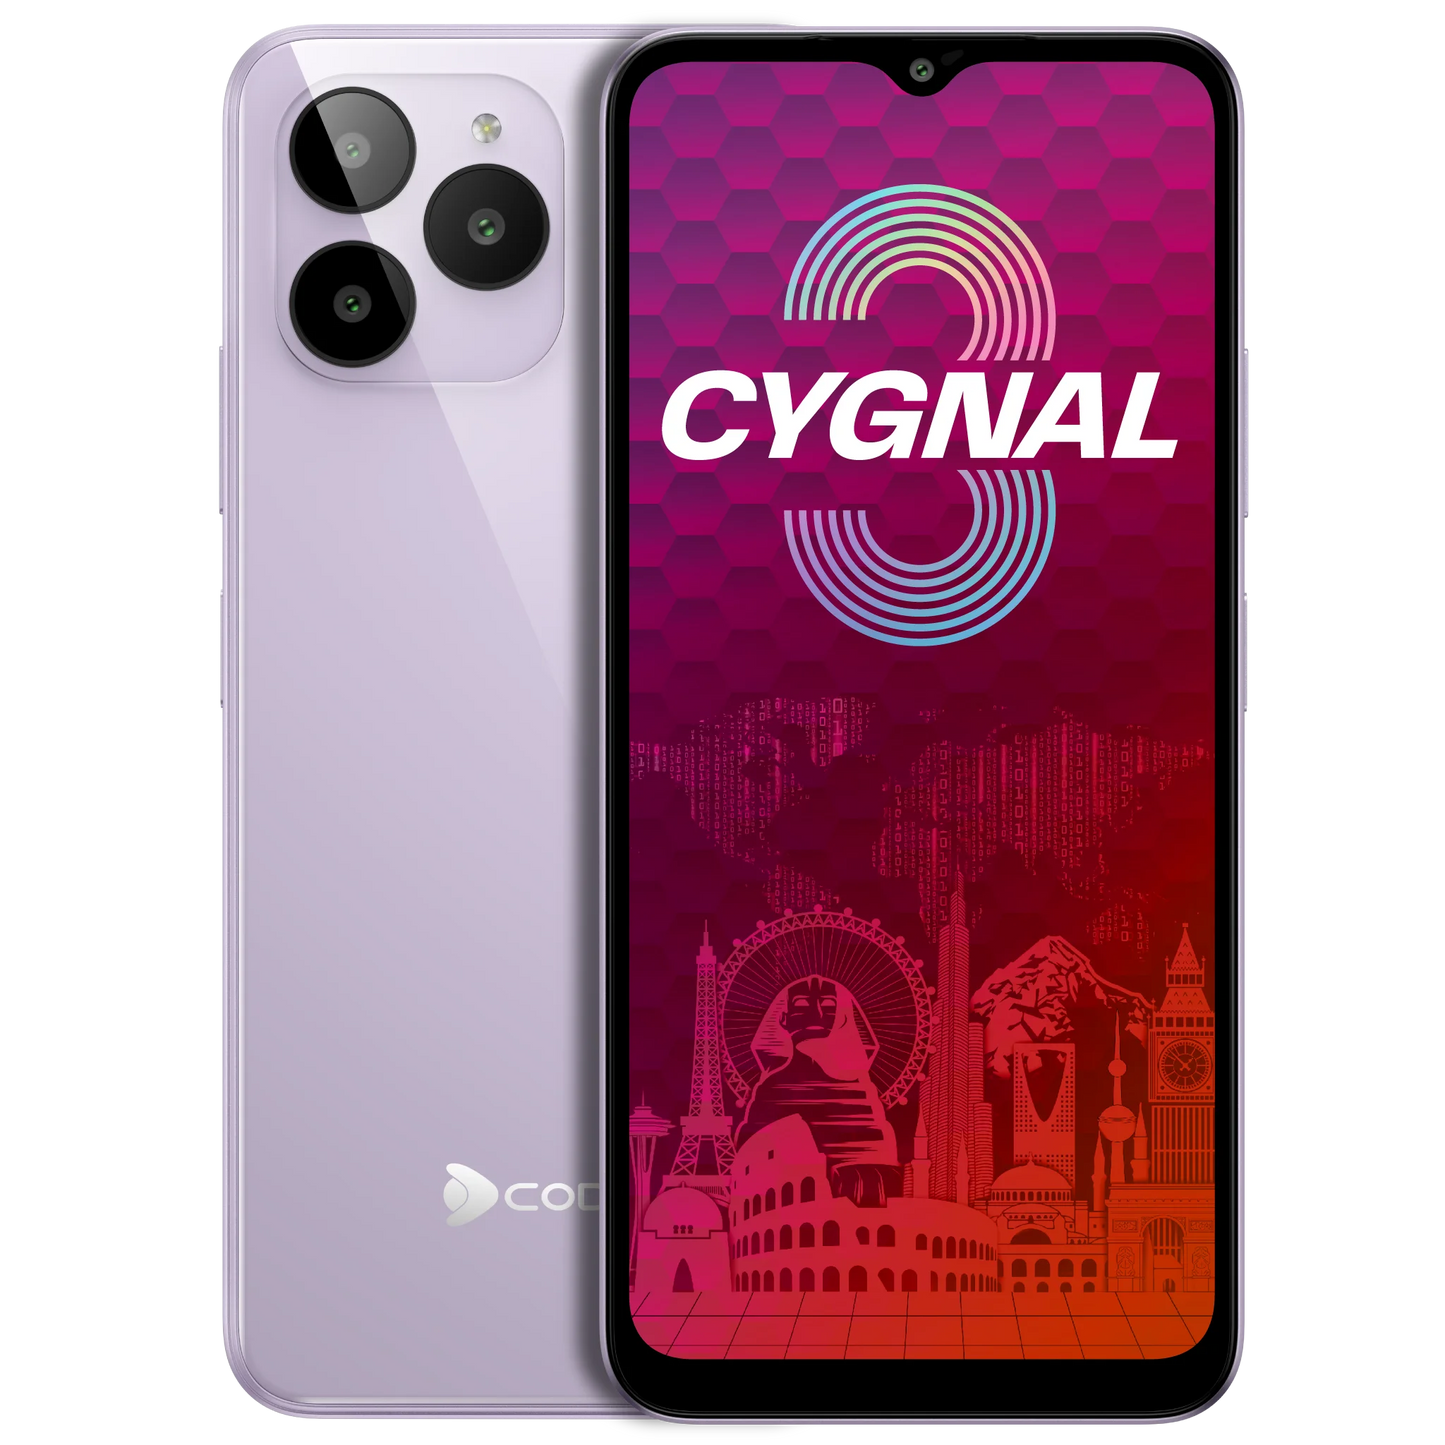 Cygnal 3, 7GB + 64GB